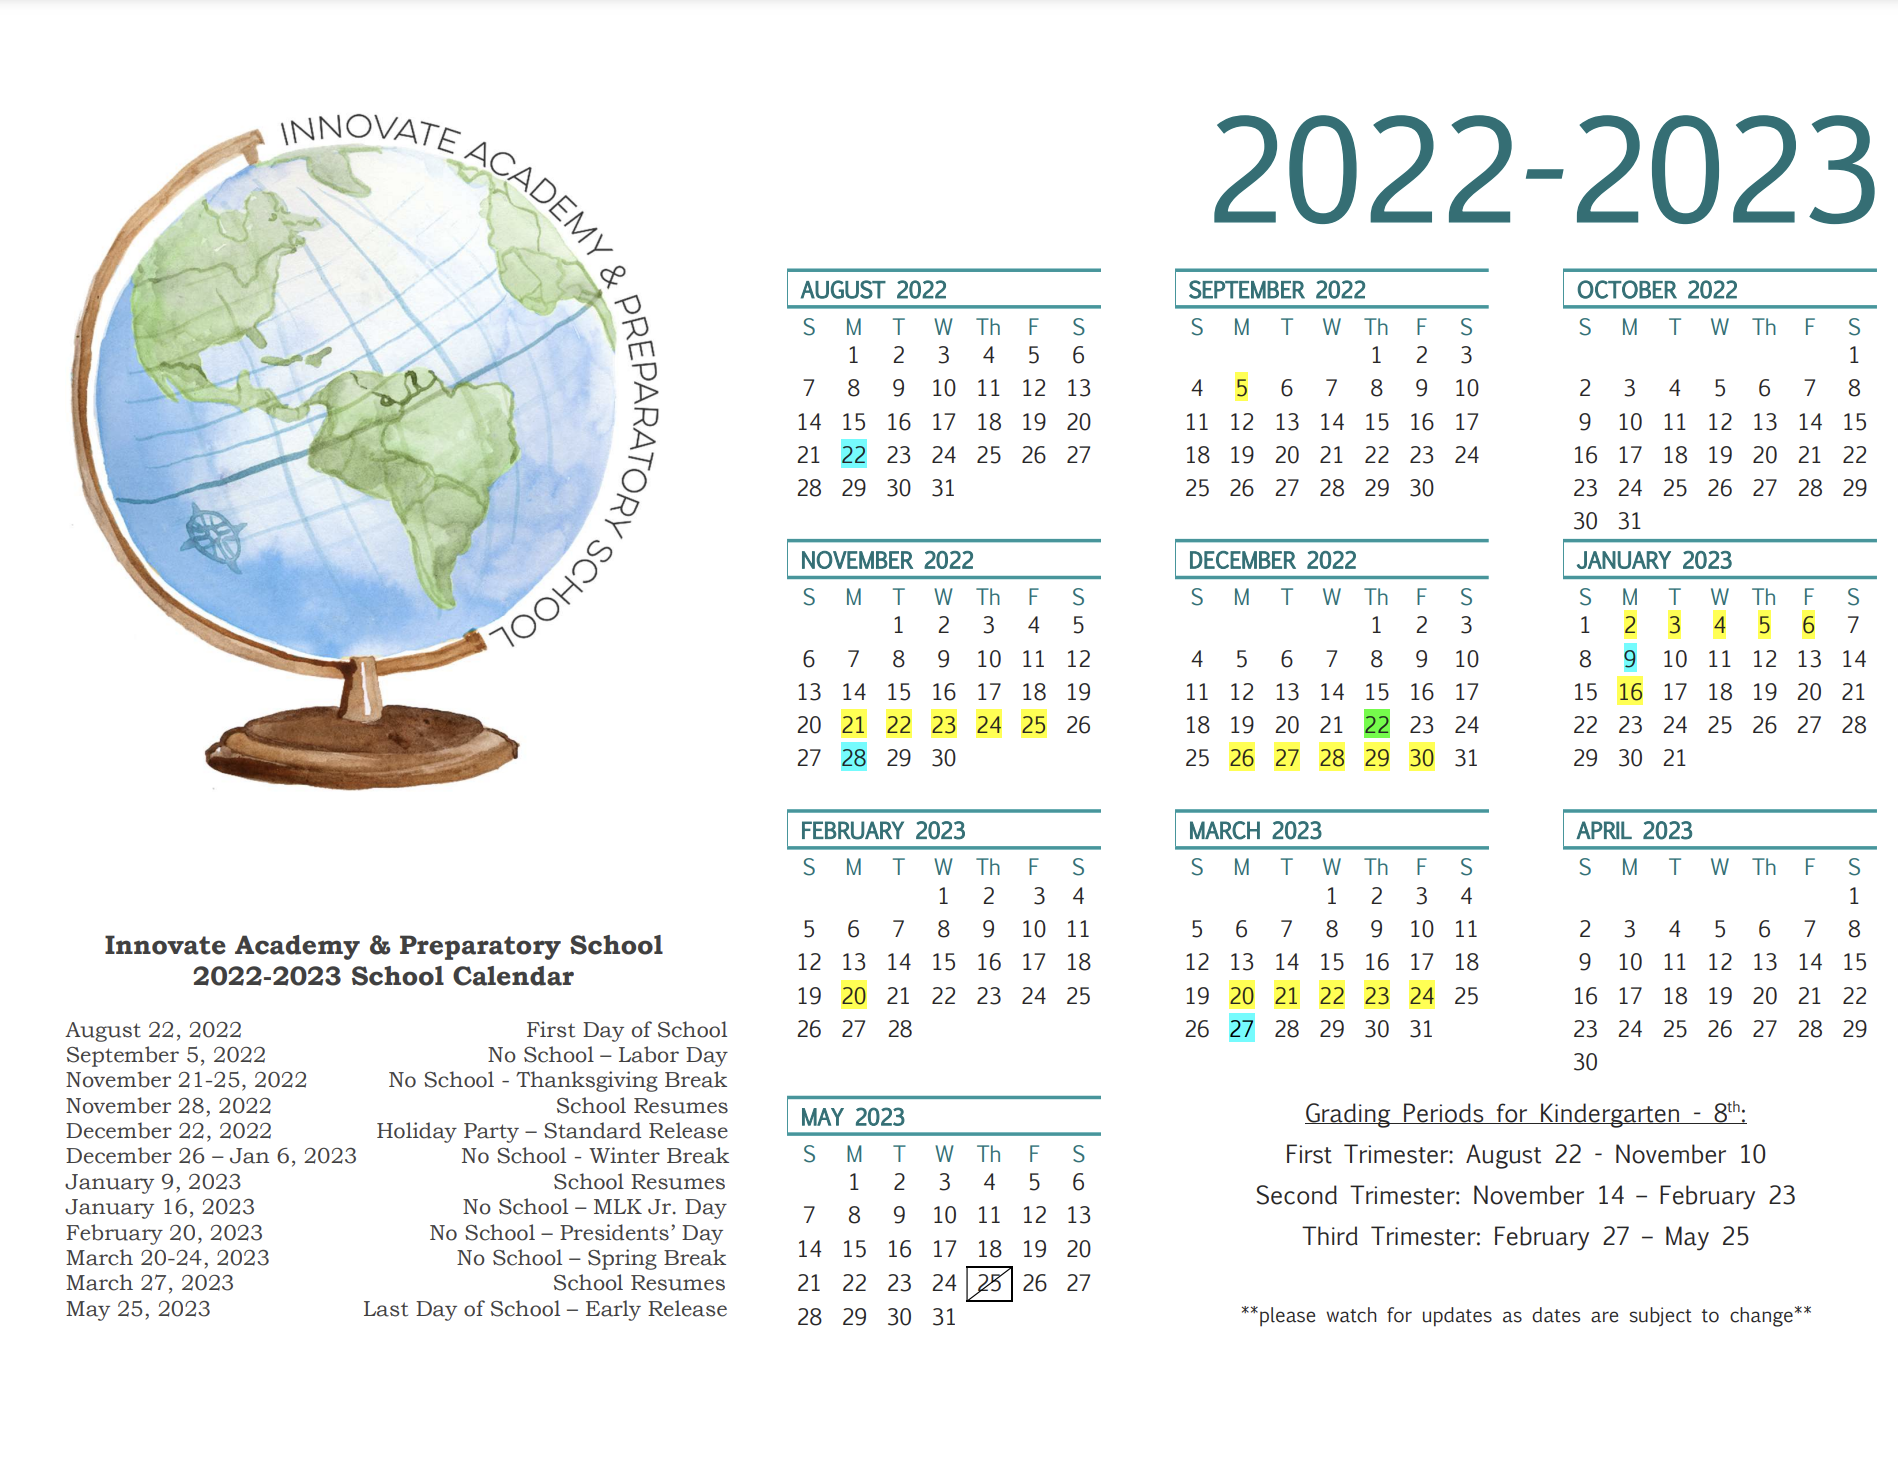 calendar-2022-2023-innovate-academy-preparatory-school